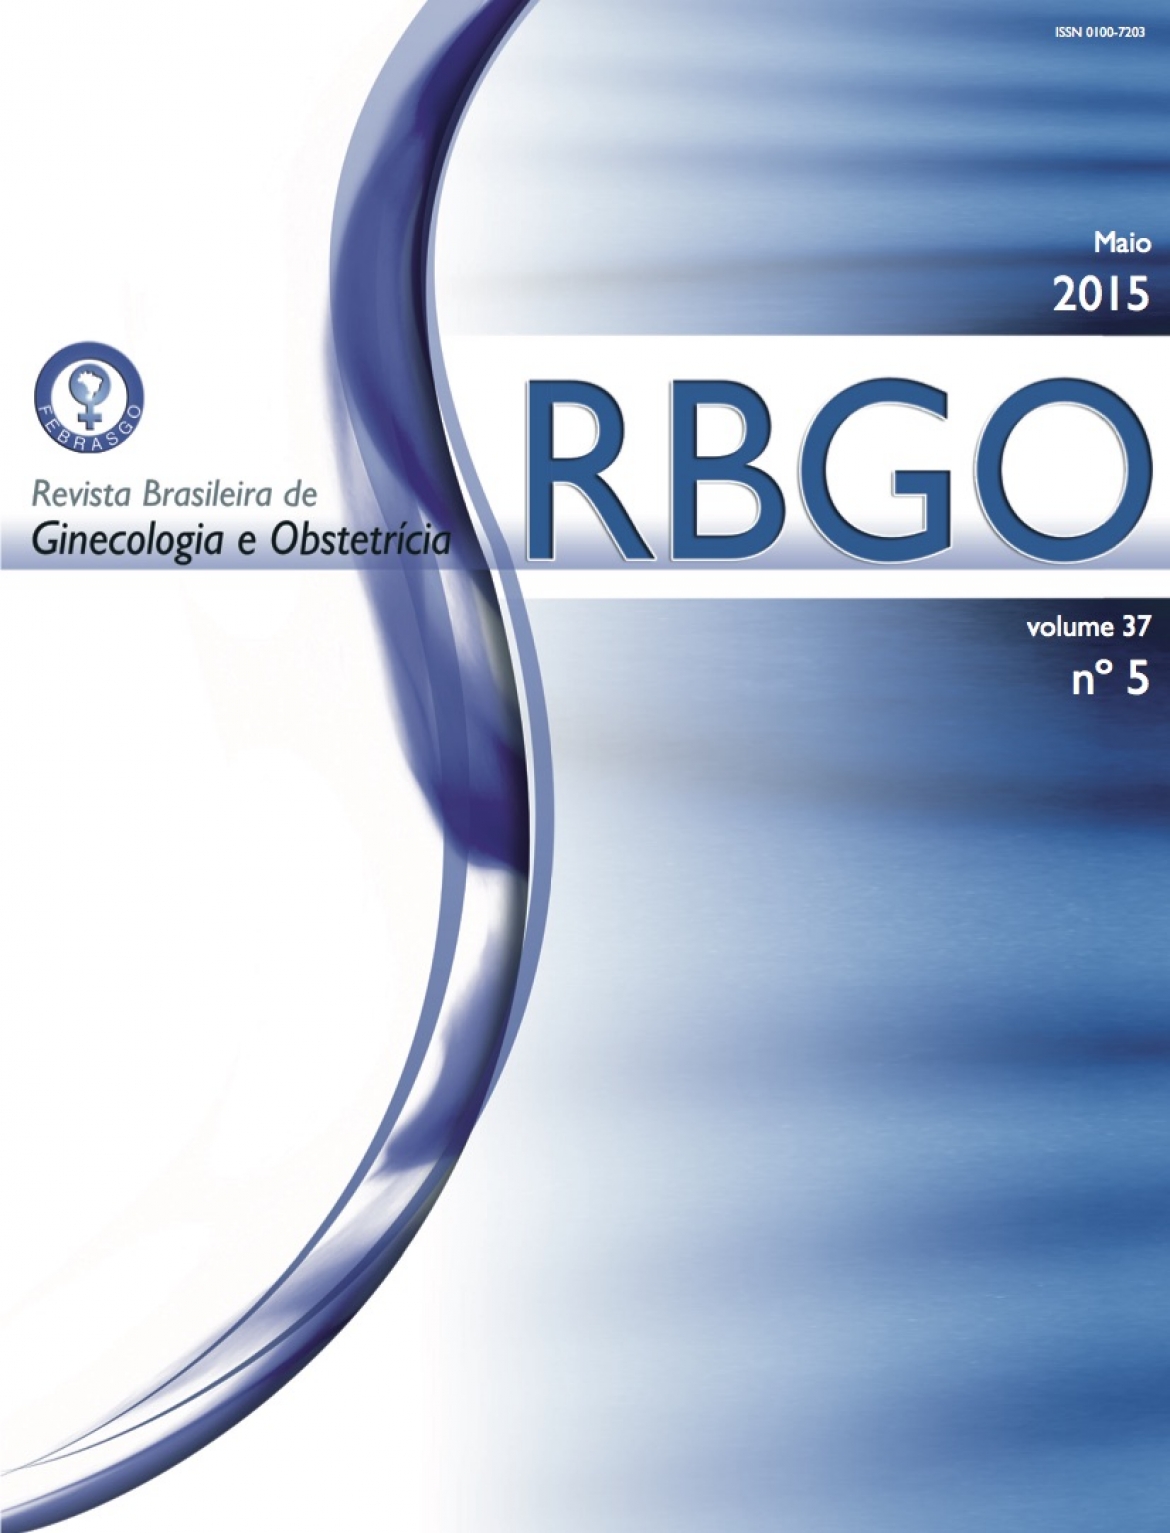 Revista Brasileira de Ginecologia e Obstetrícia – 2015 / Vol. 37 n°5